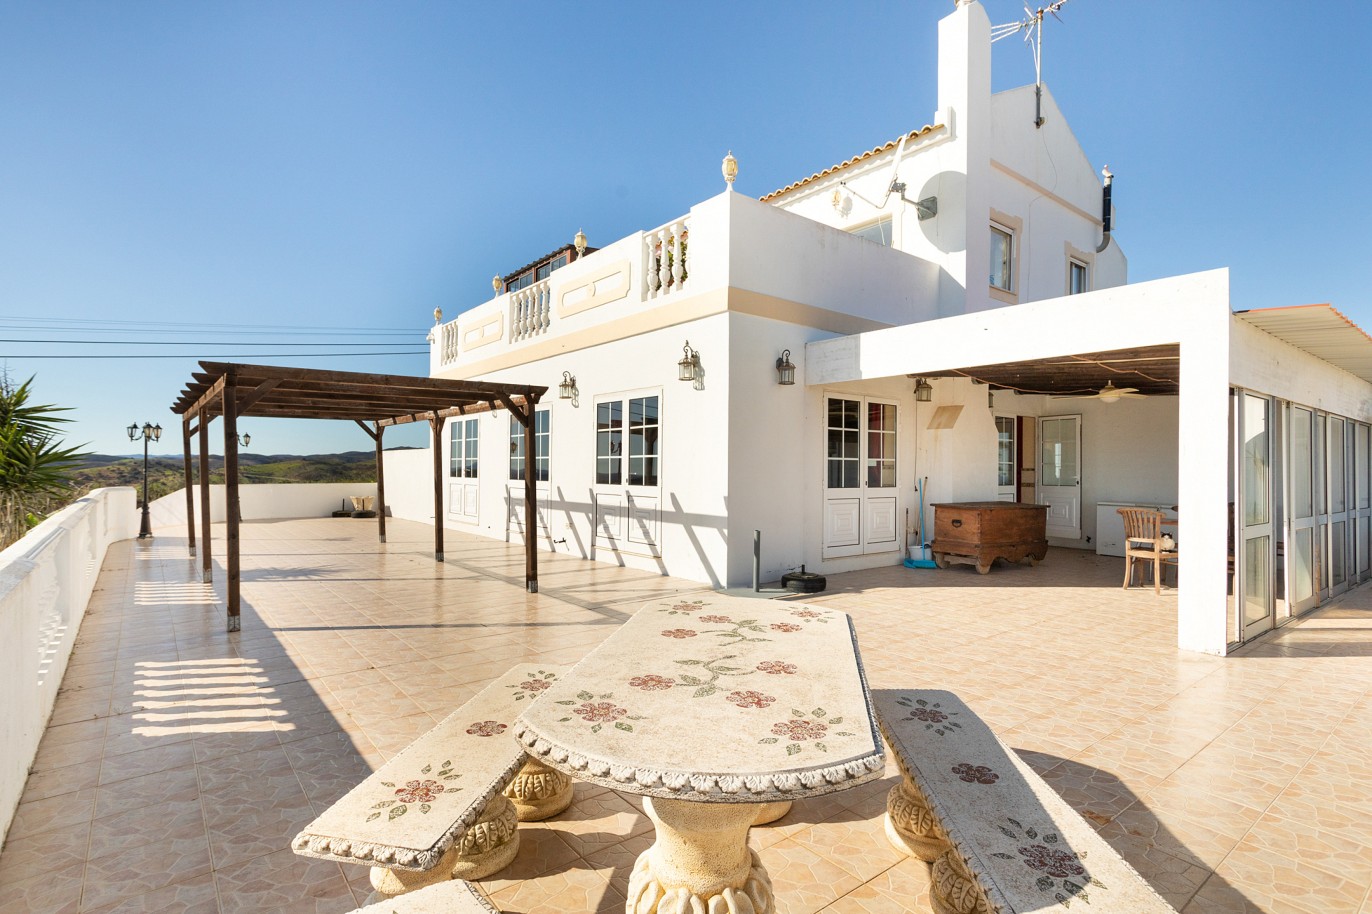 Moradia isolada com área comercial, para venda em Tavira, Algarve_215988